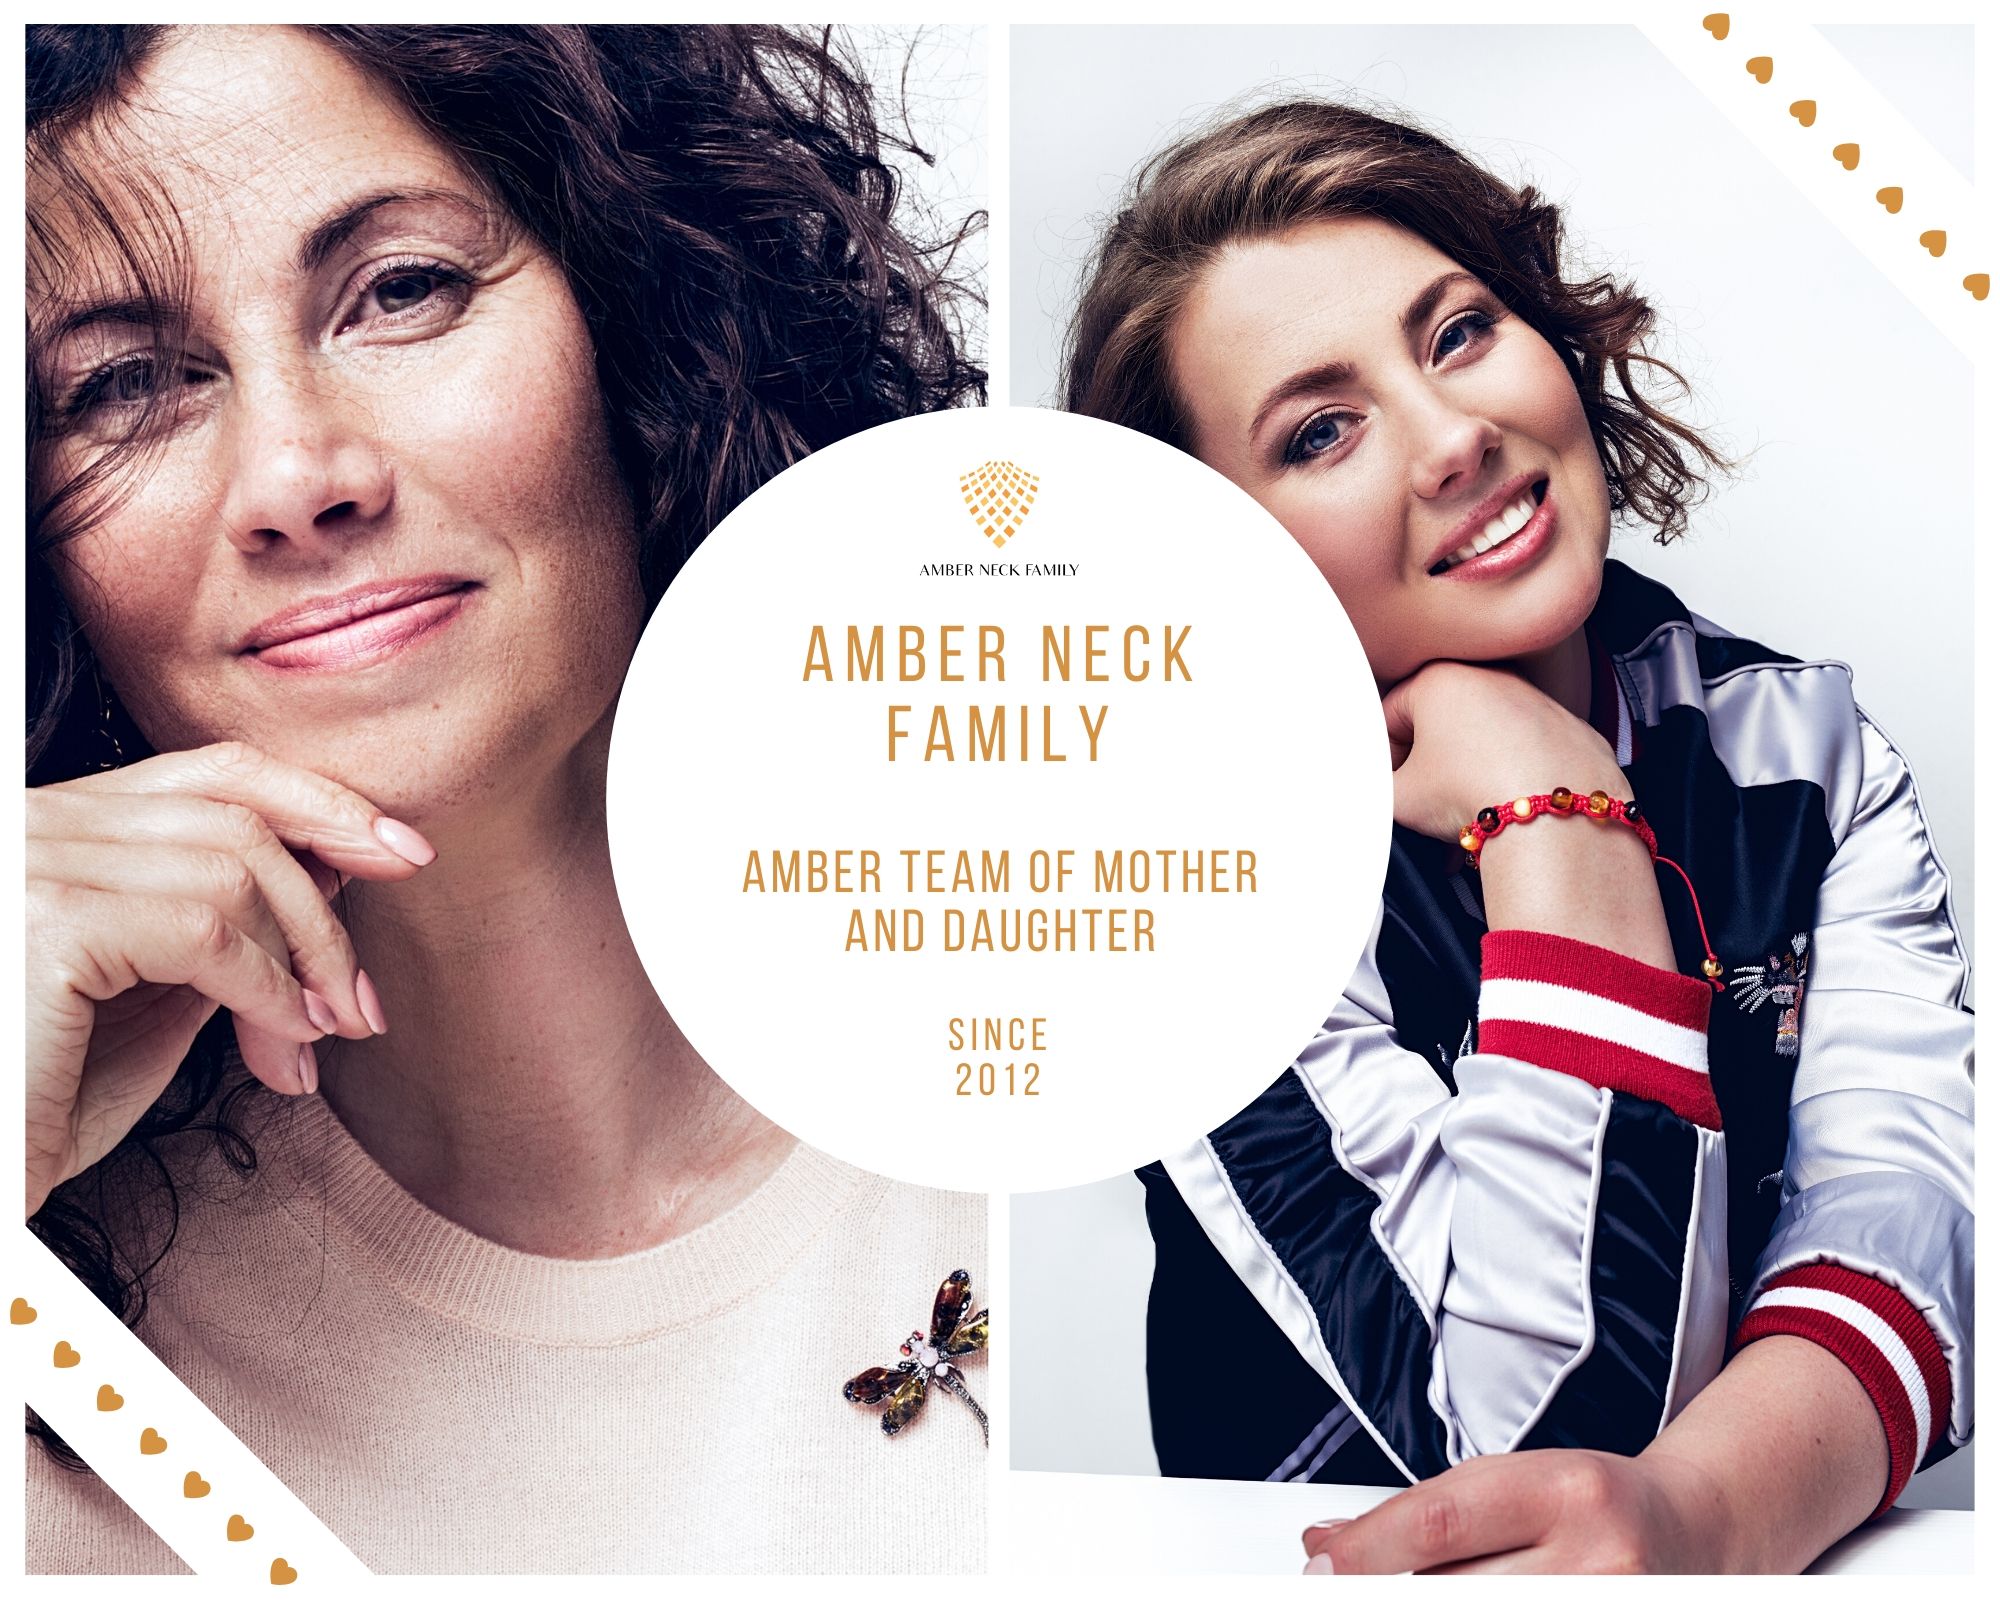 Amber neck family